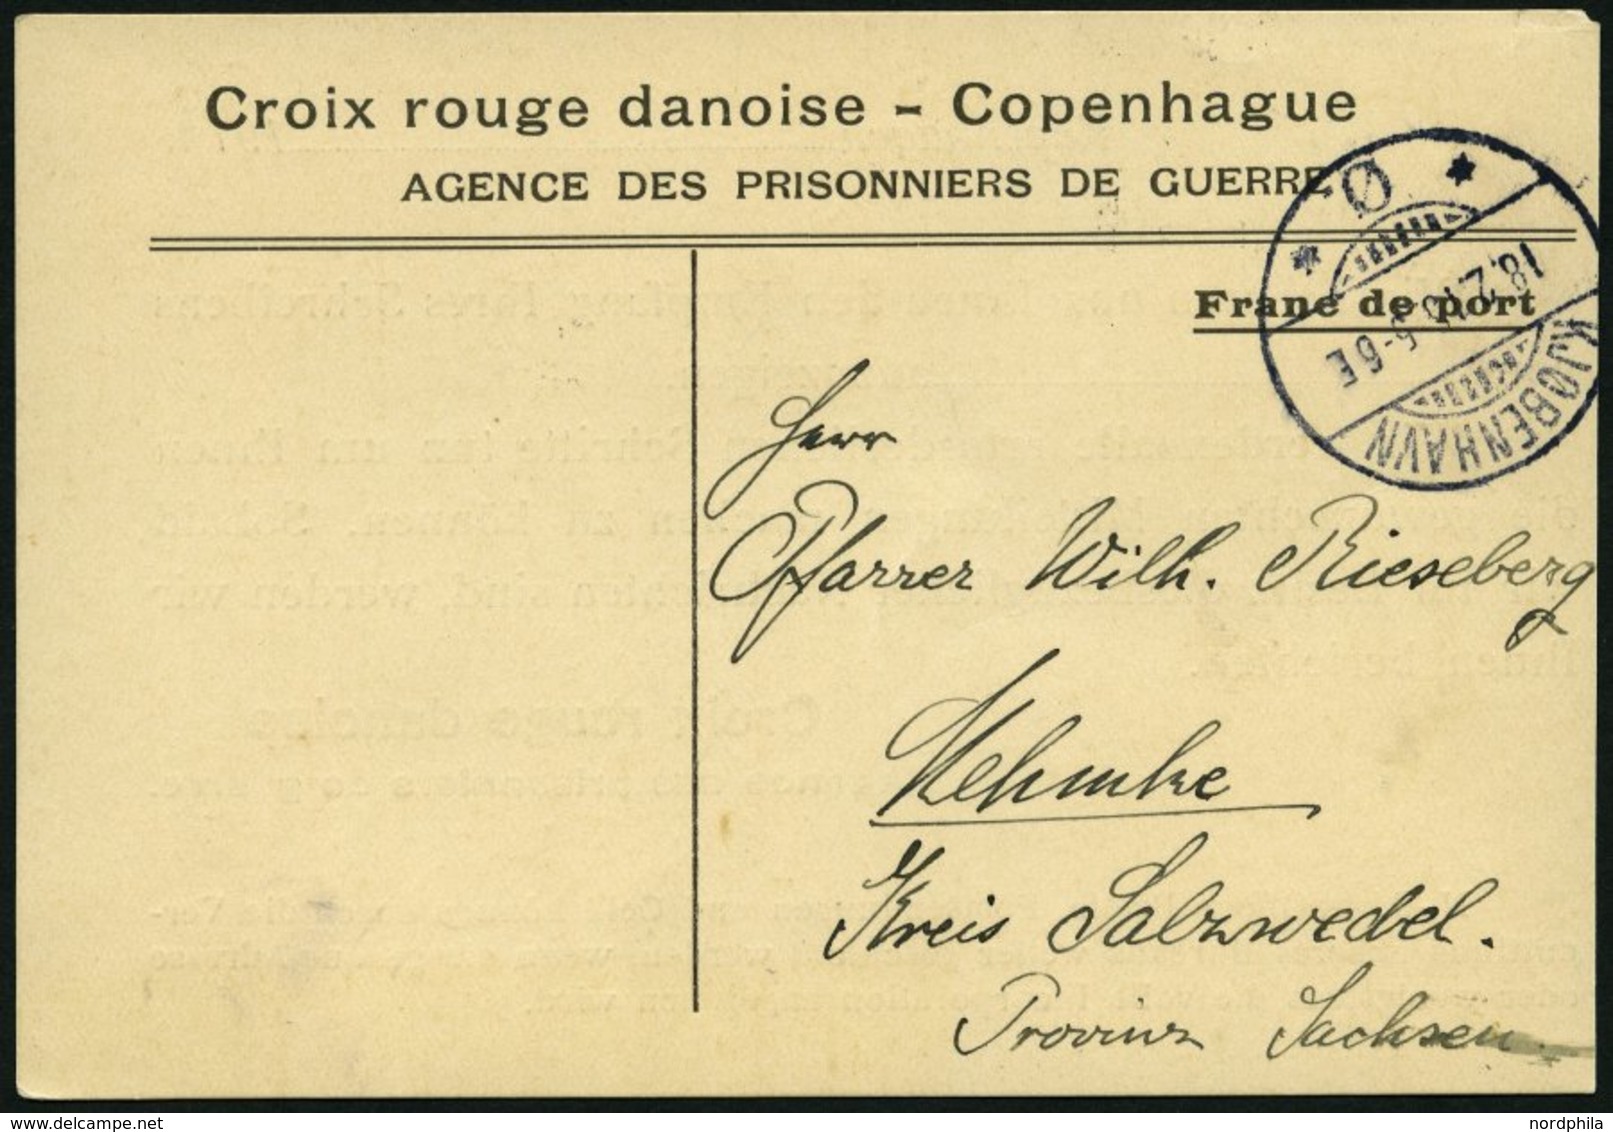 DÄNEMARK 1916, Antwortkarte Des Dänischen Roten Kreuzes An Die Angehörigen Eines Kriegsgefangenen In Sachsen, Feinst - Gebruikt